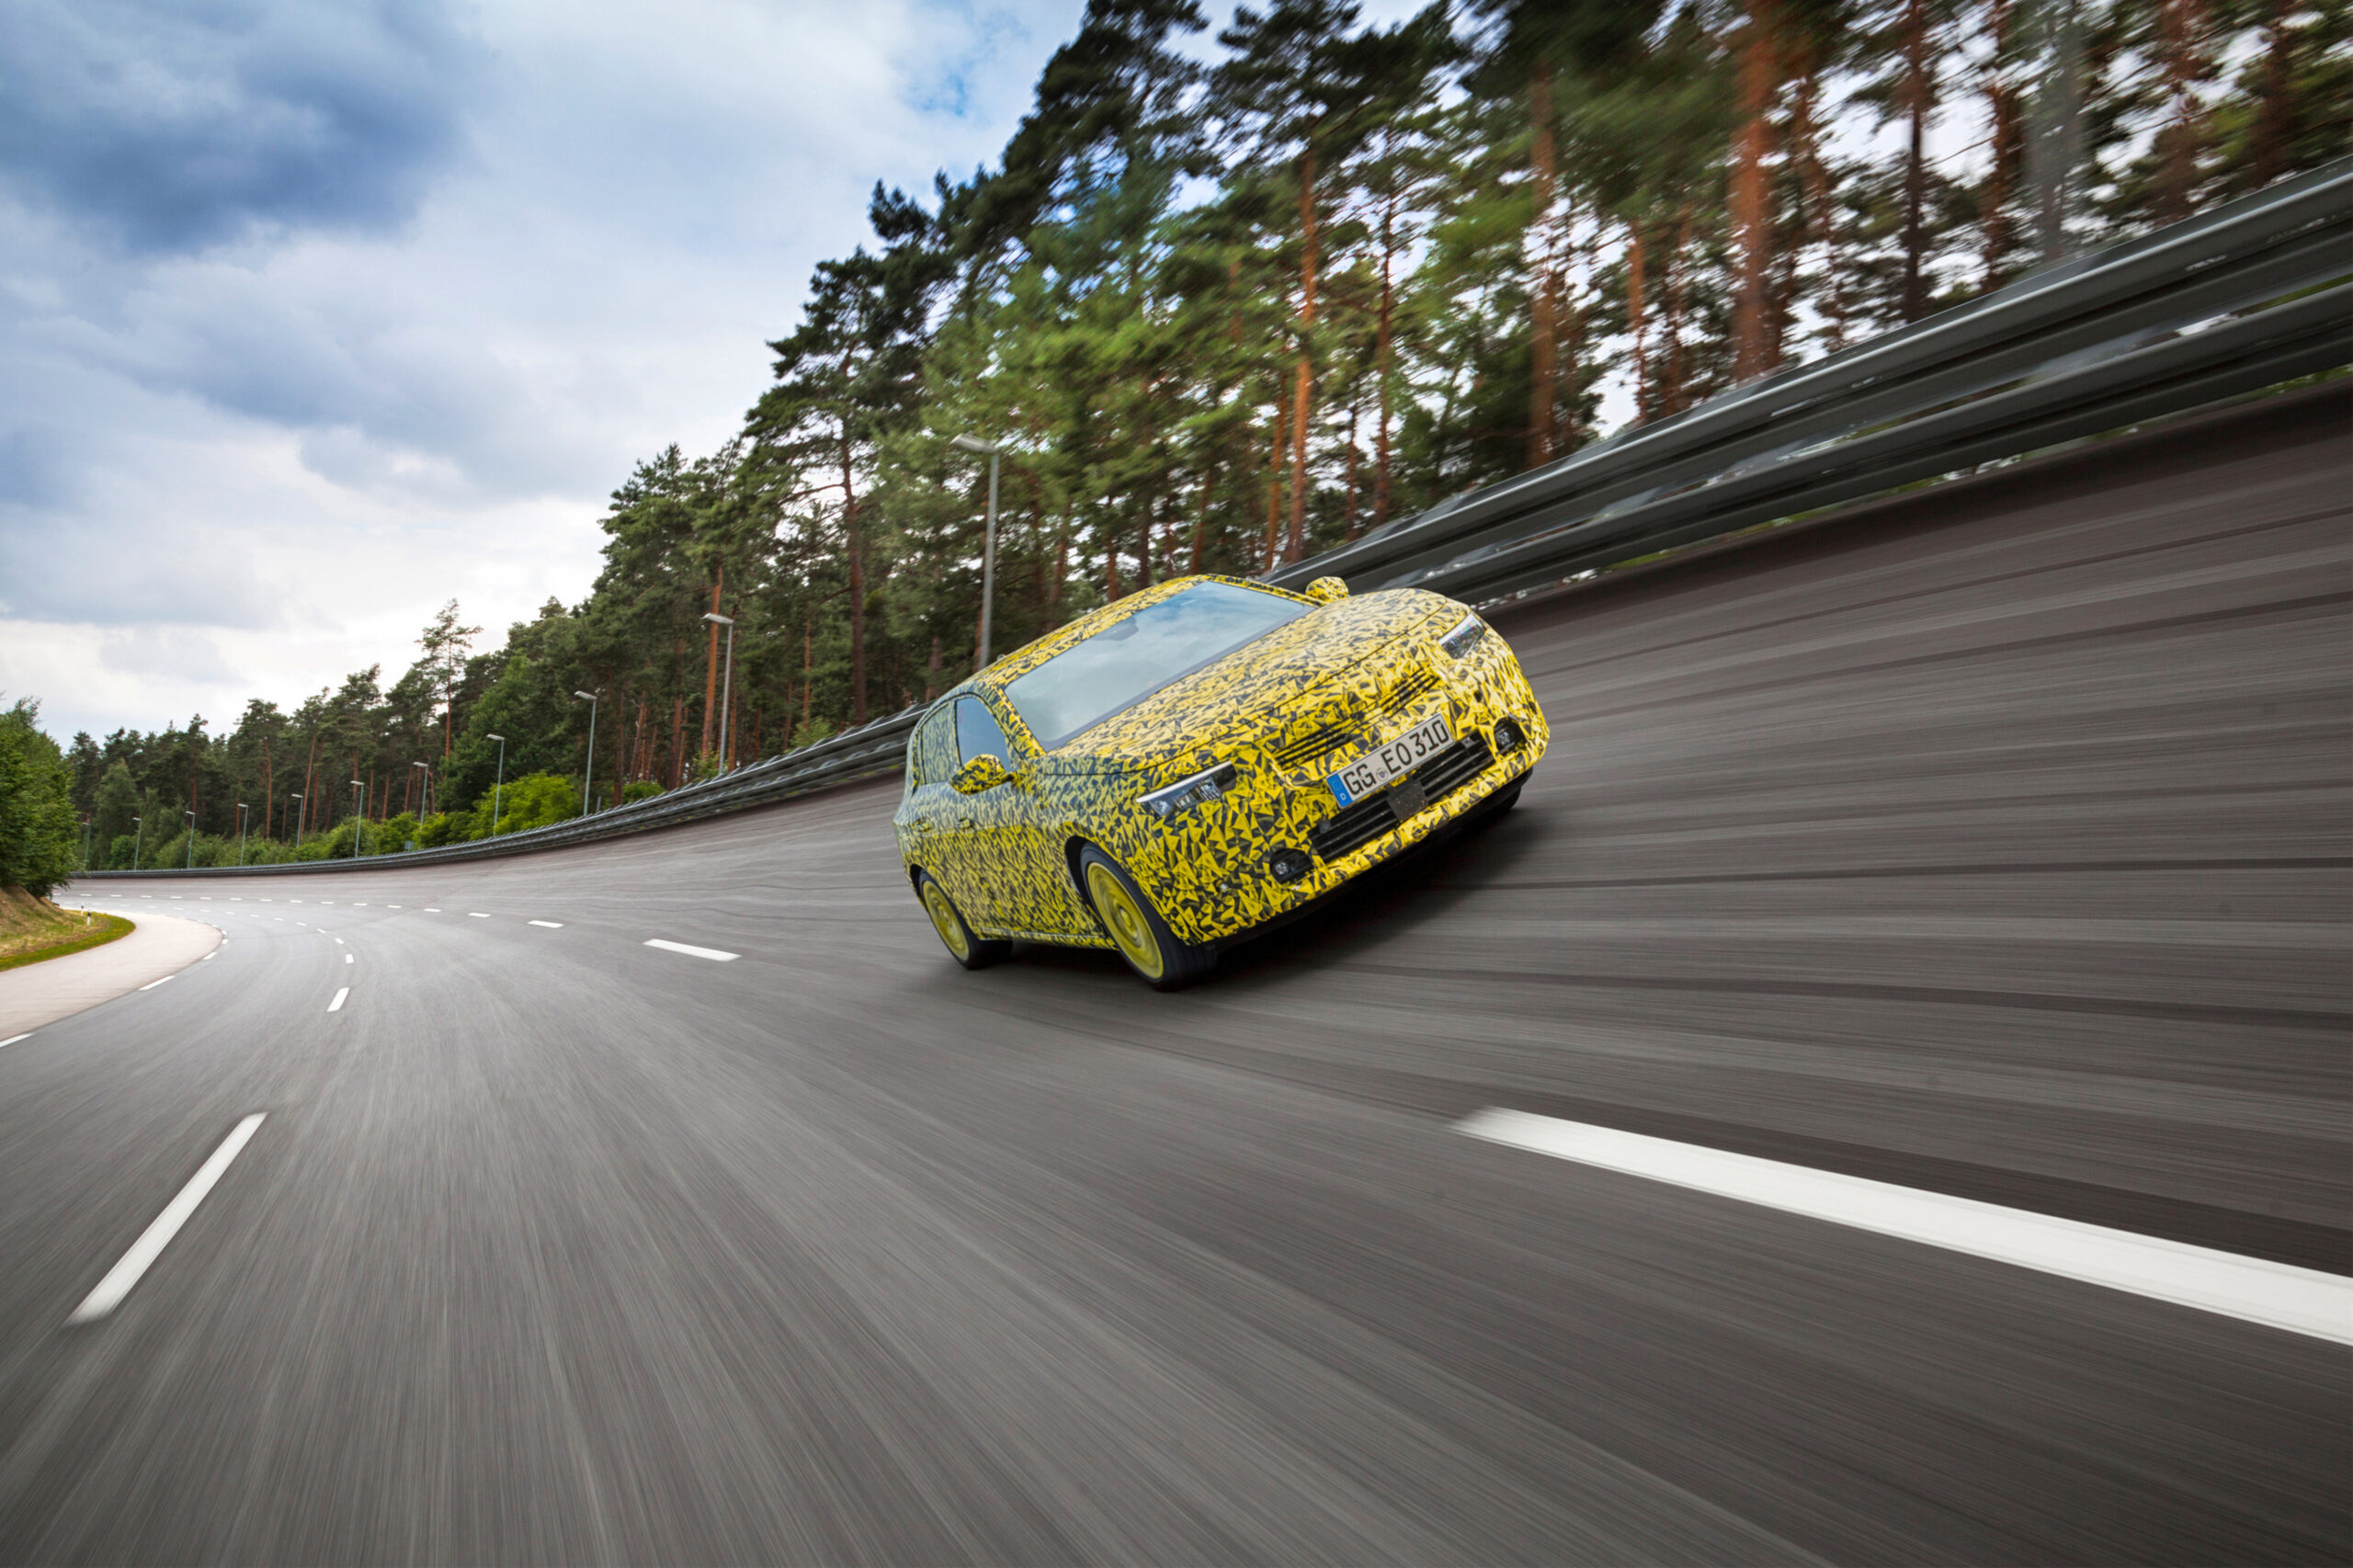 Dopo una durissima serie di test la nuova Opel Astra è in dirittura d’arrivo: poche settimane all’anteprima